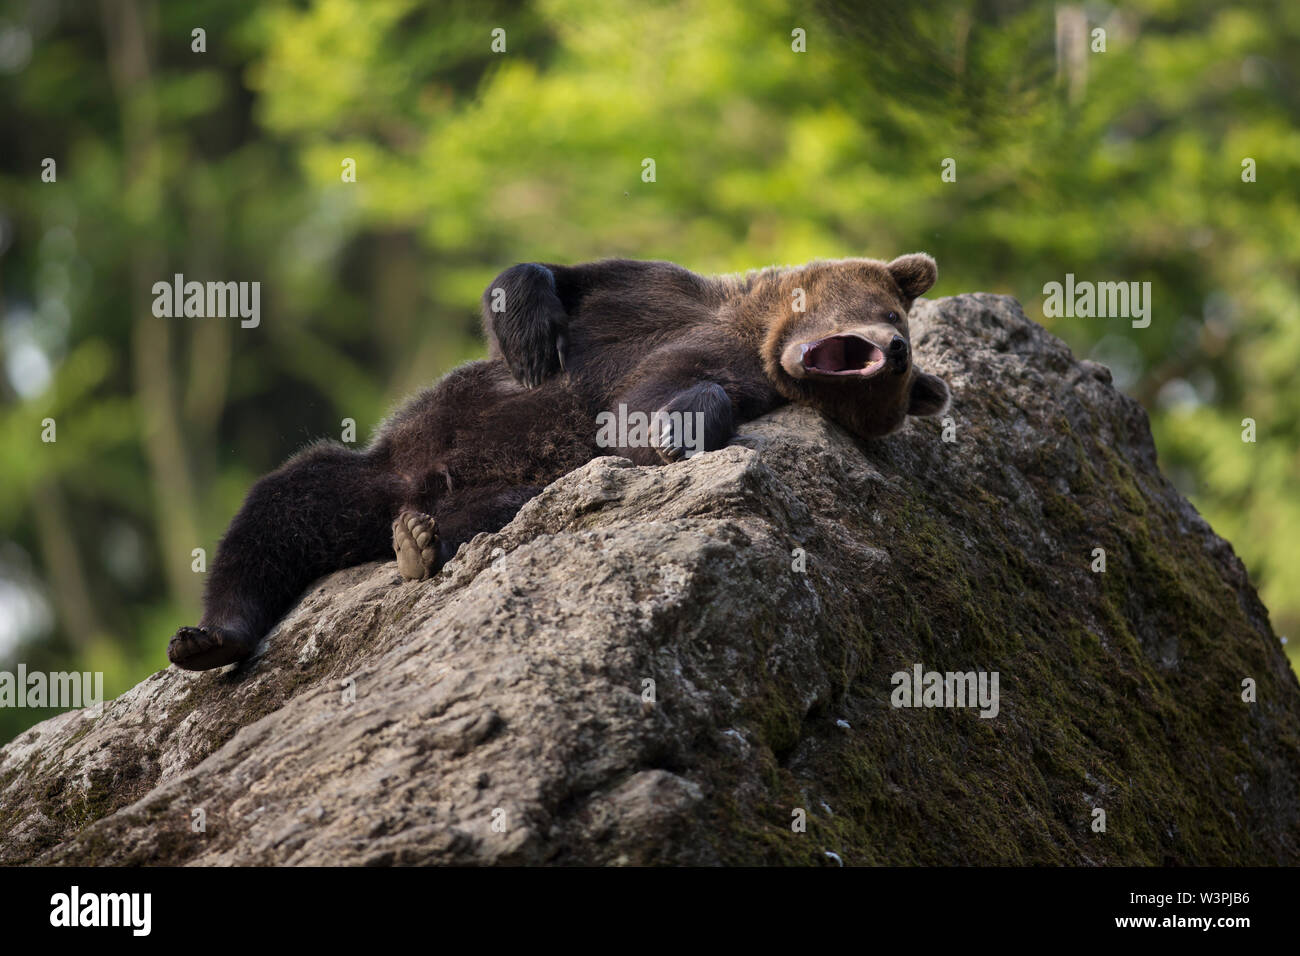 Portrait strong homme ours brun (Ursus arctos) qui reste sur la pierre grise couverts de mousse dans la nature habitat avec vert des arbres en arrière-plan. Diagonale Banque D'Images